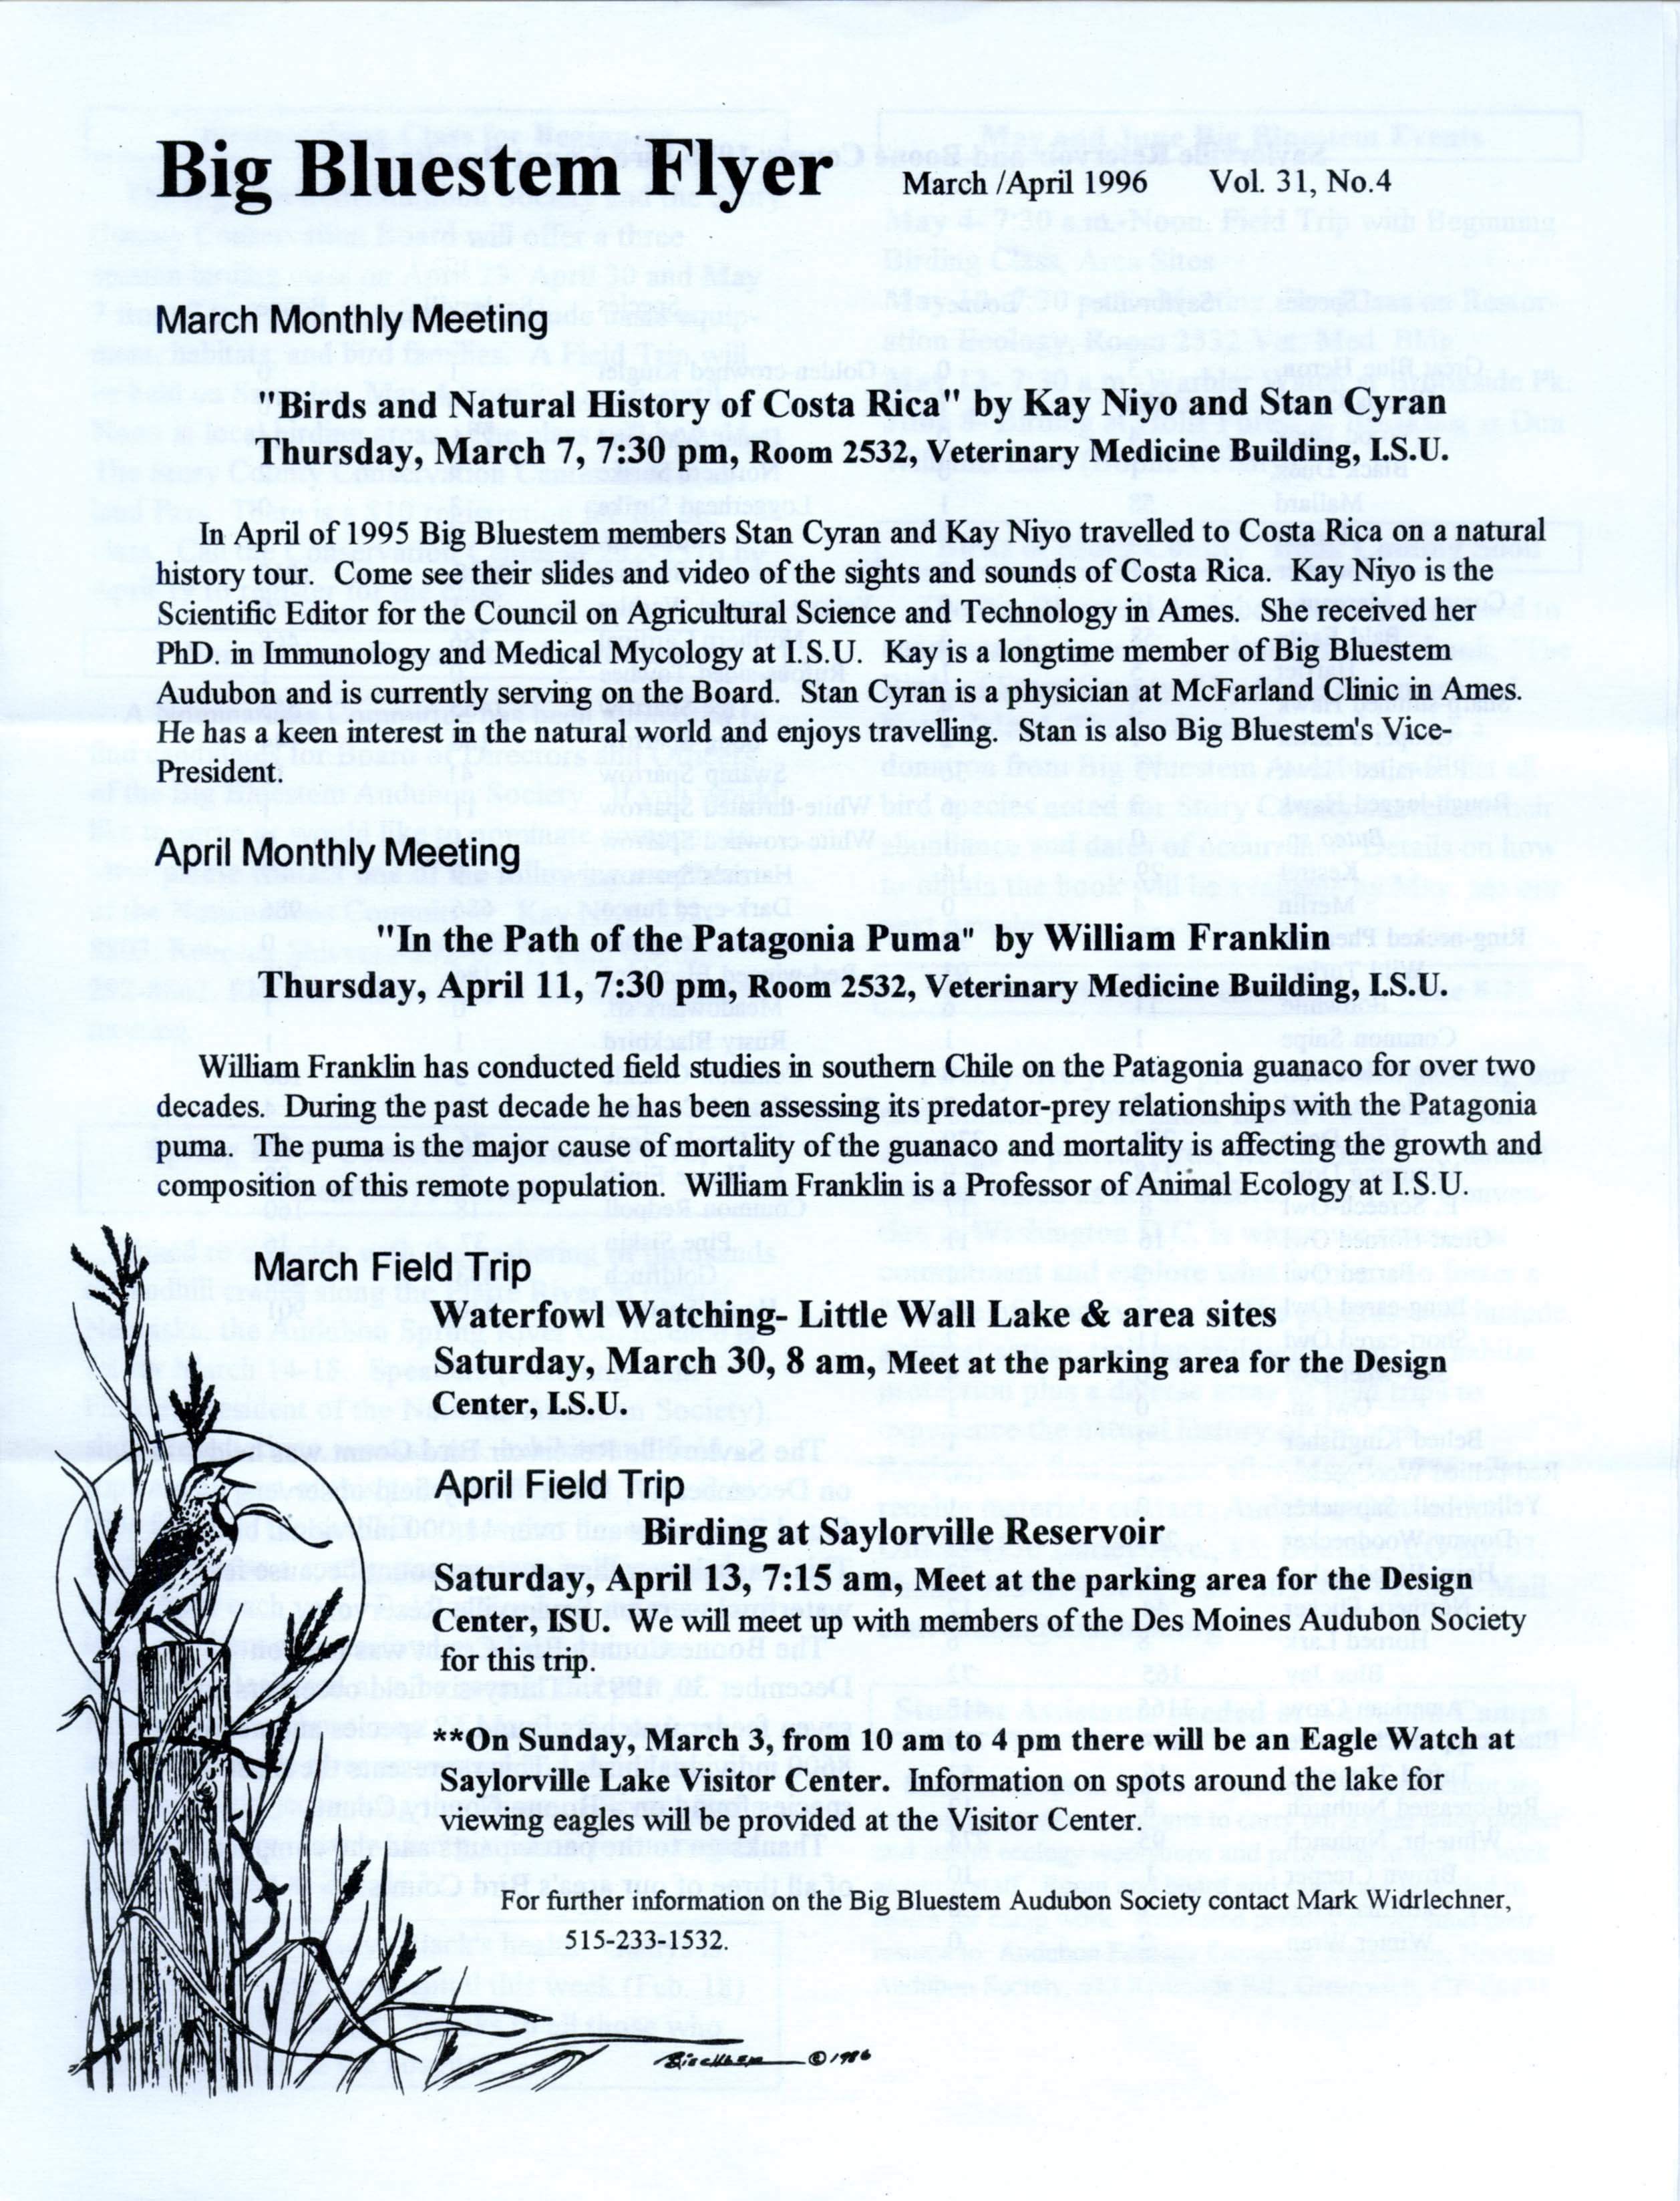 Big Bluestem Flyer, Volume 31, Number 4, March/April 1996